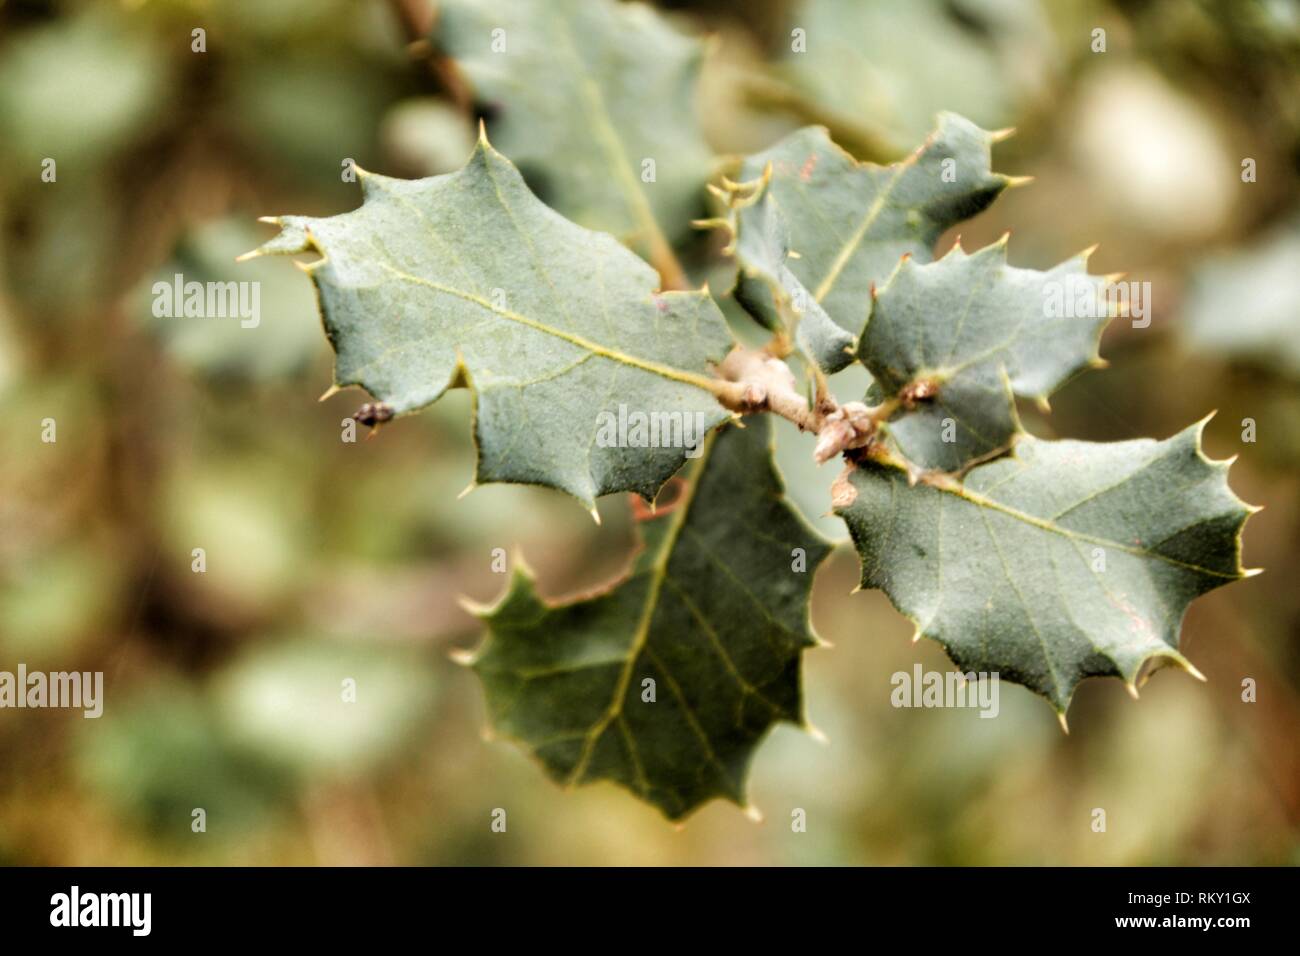 Ilex Aquifolium leaves texture in the forest Stock Photo